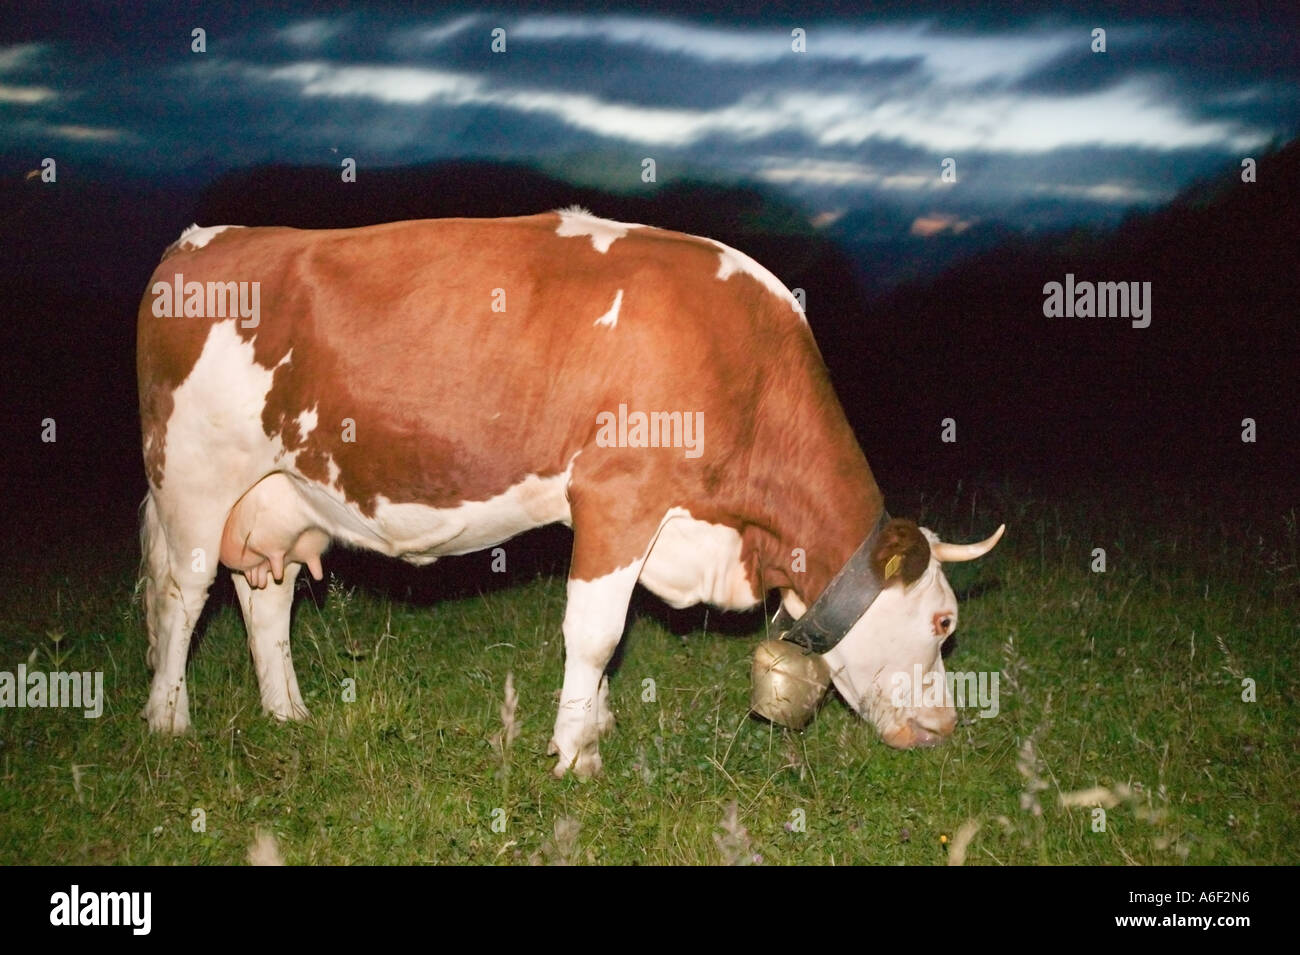 Cow on mountain pasture Stock Photo